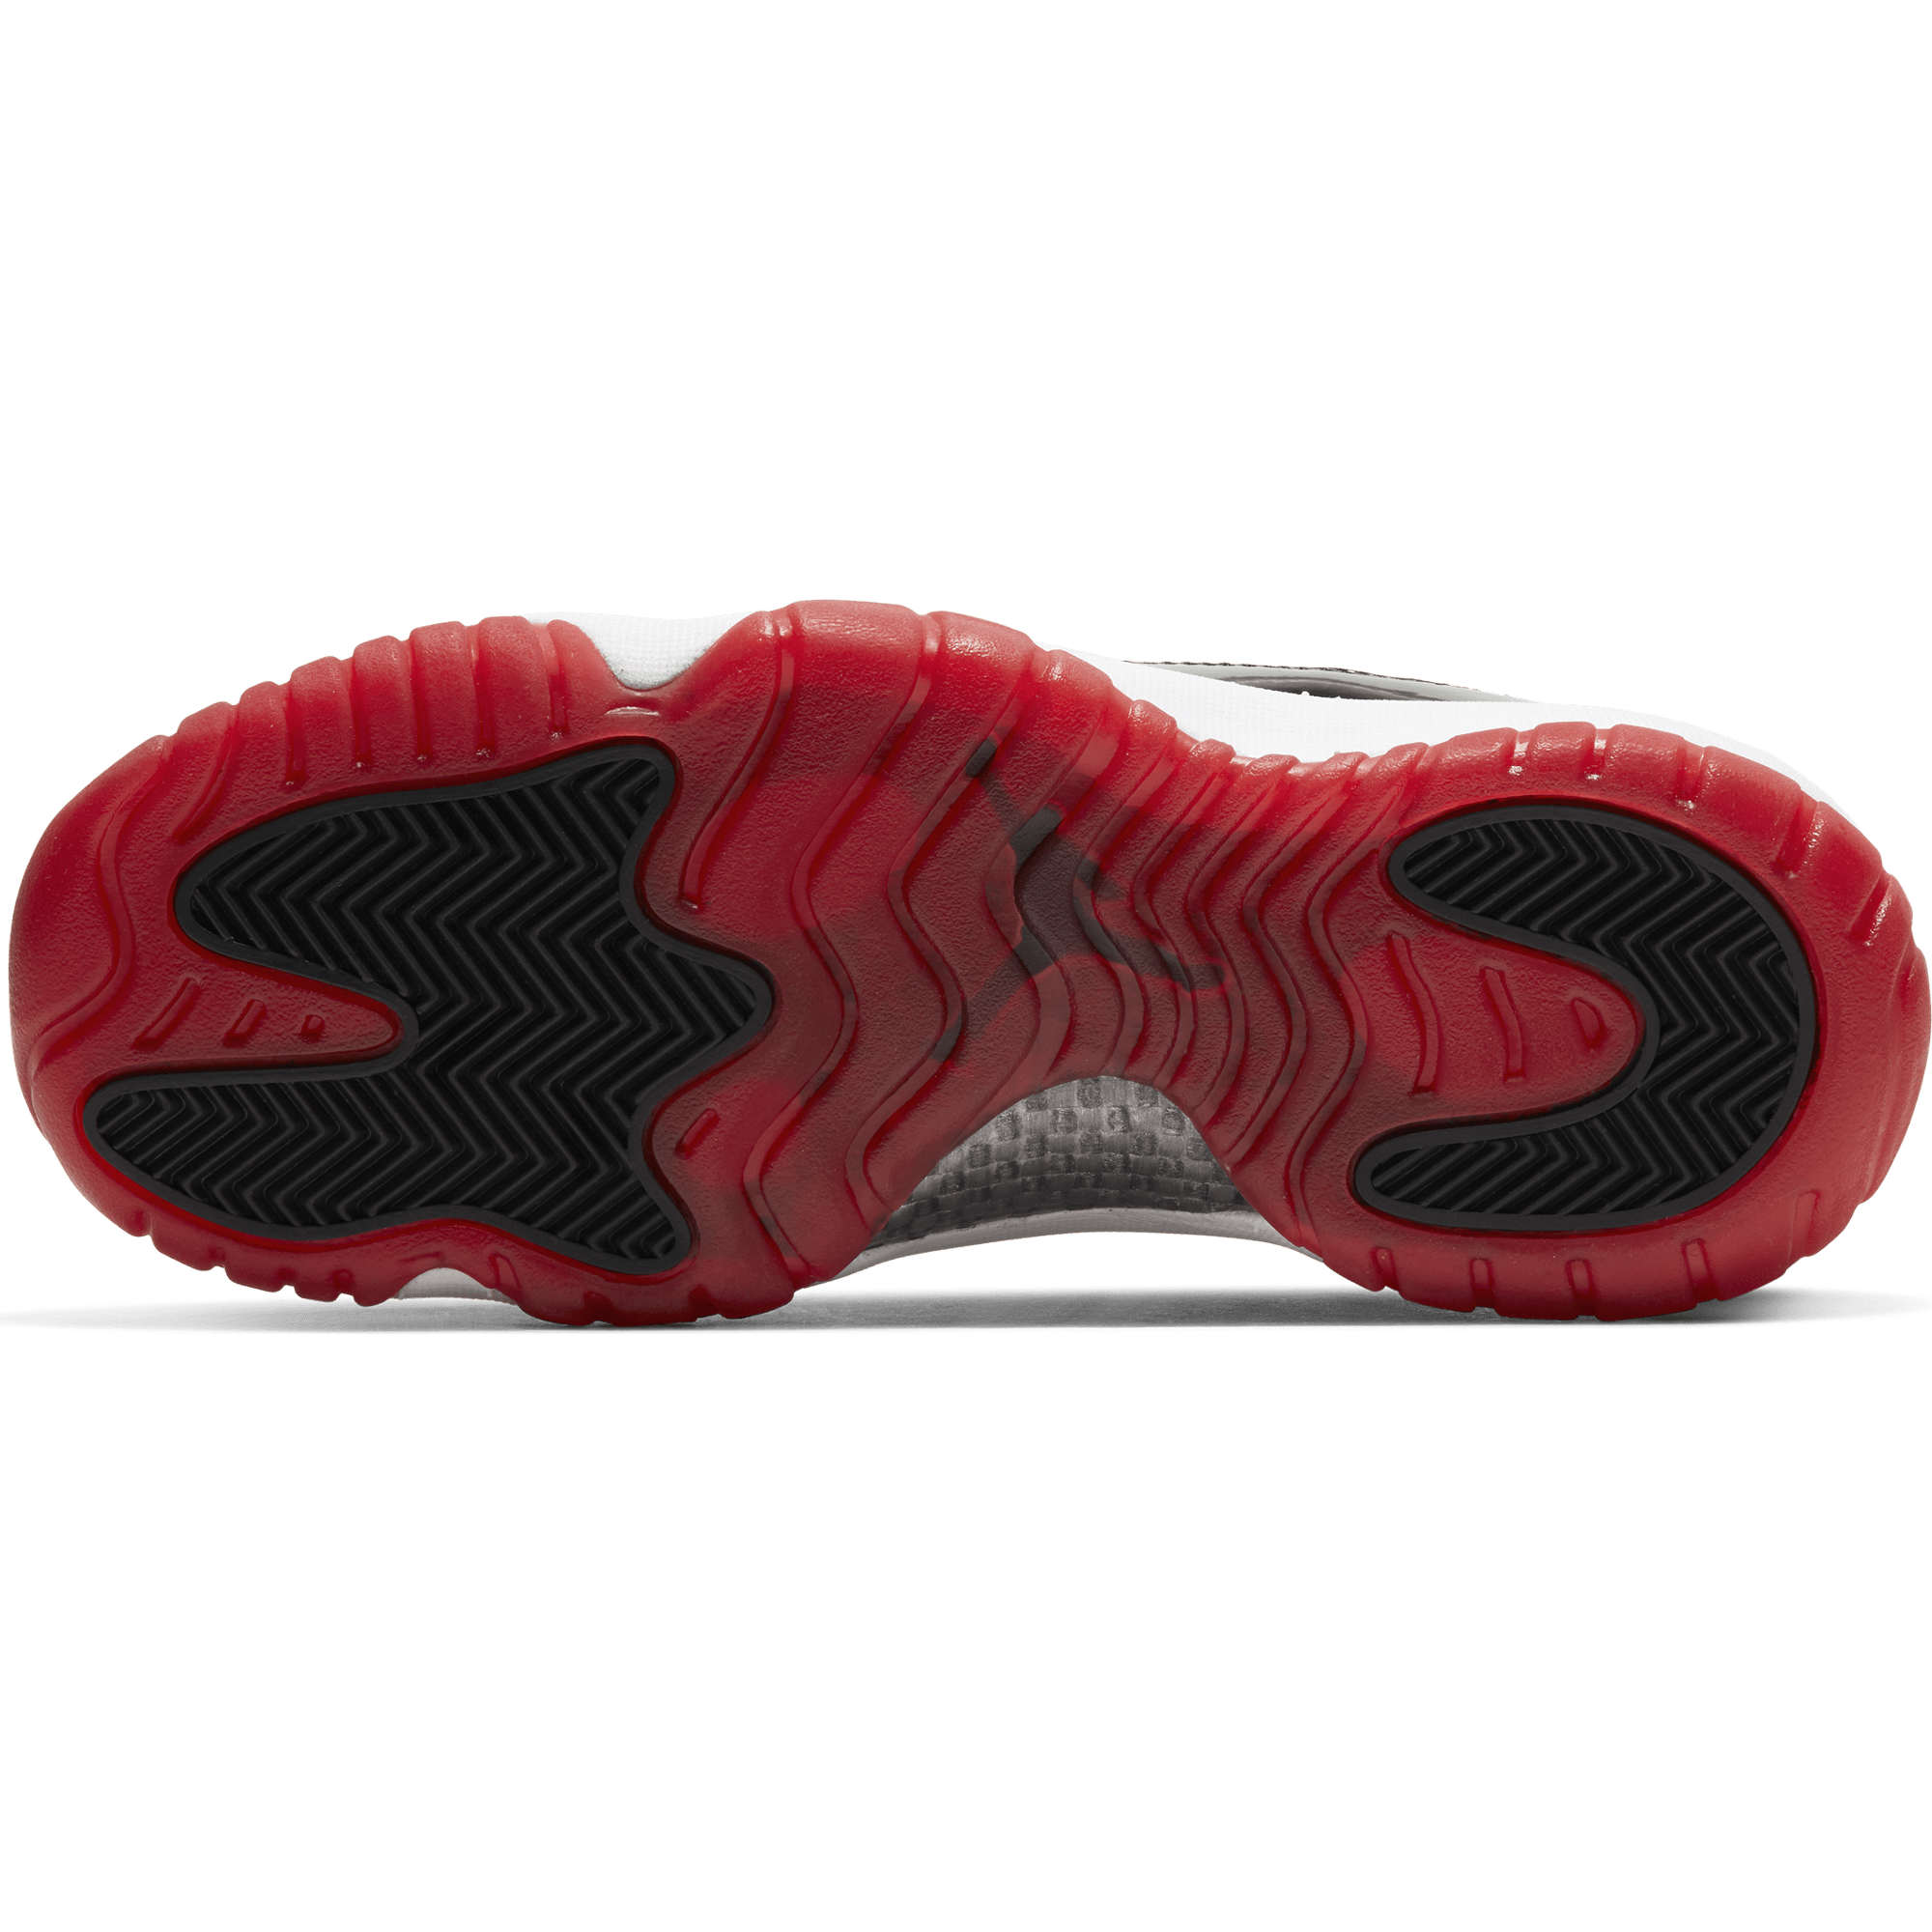 Air Jordan 11 Retro Low - Big Kids' Shoe